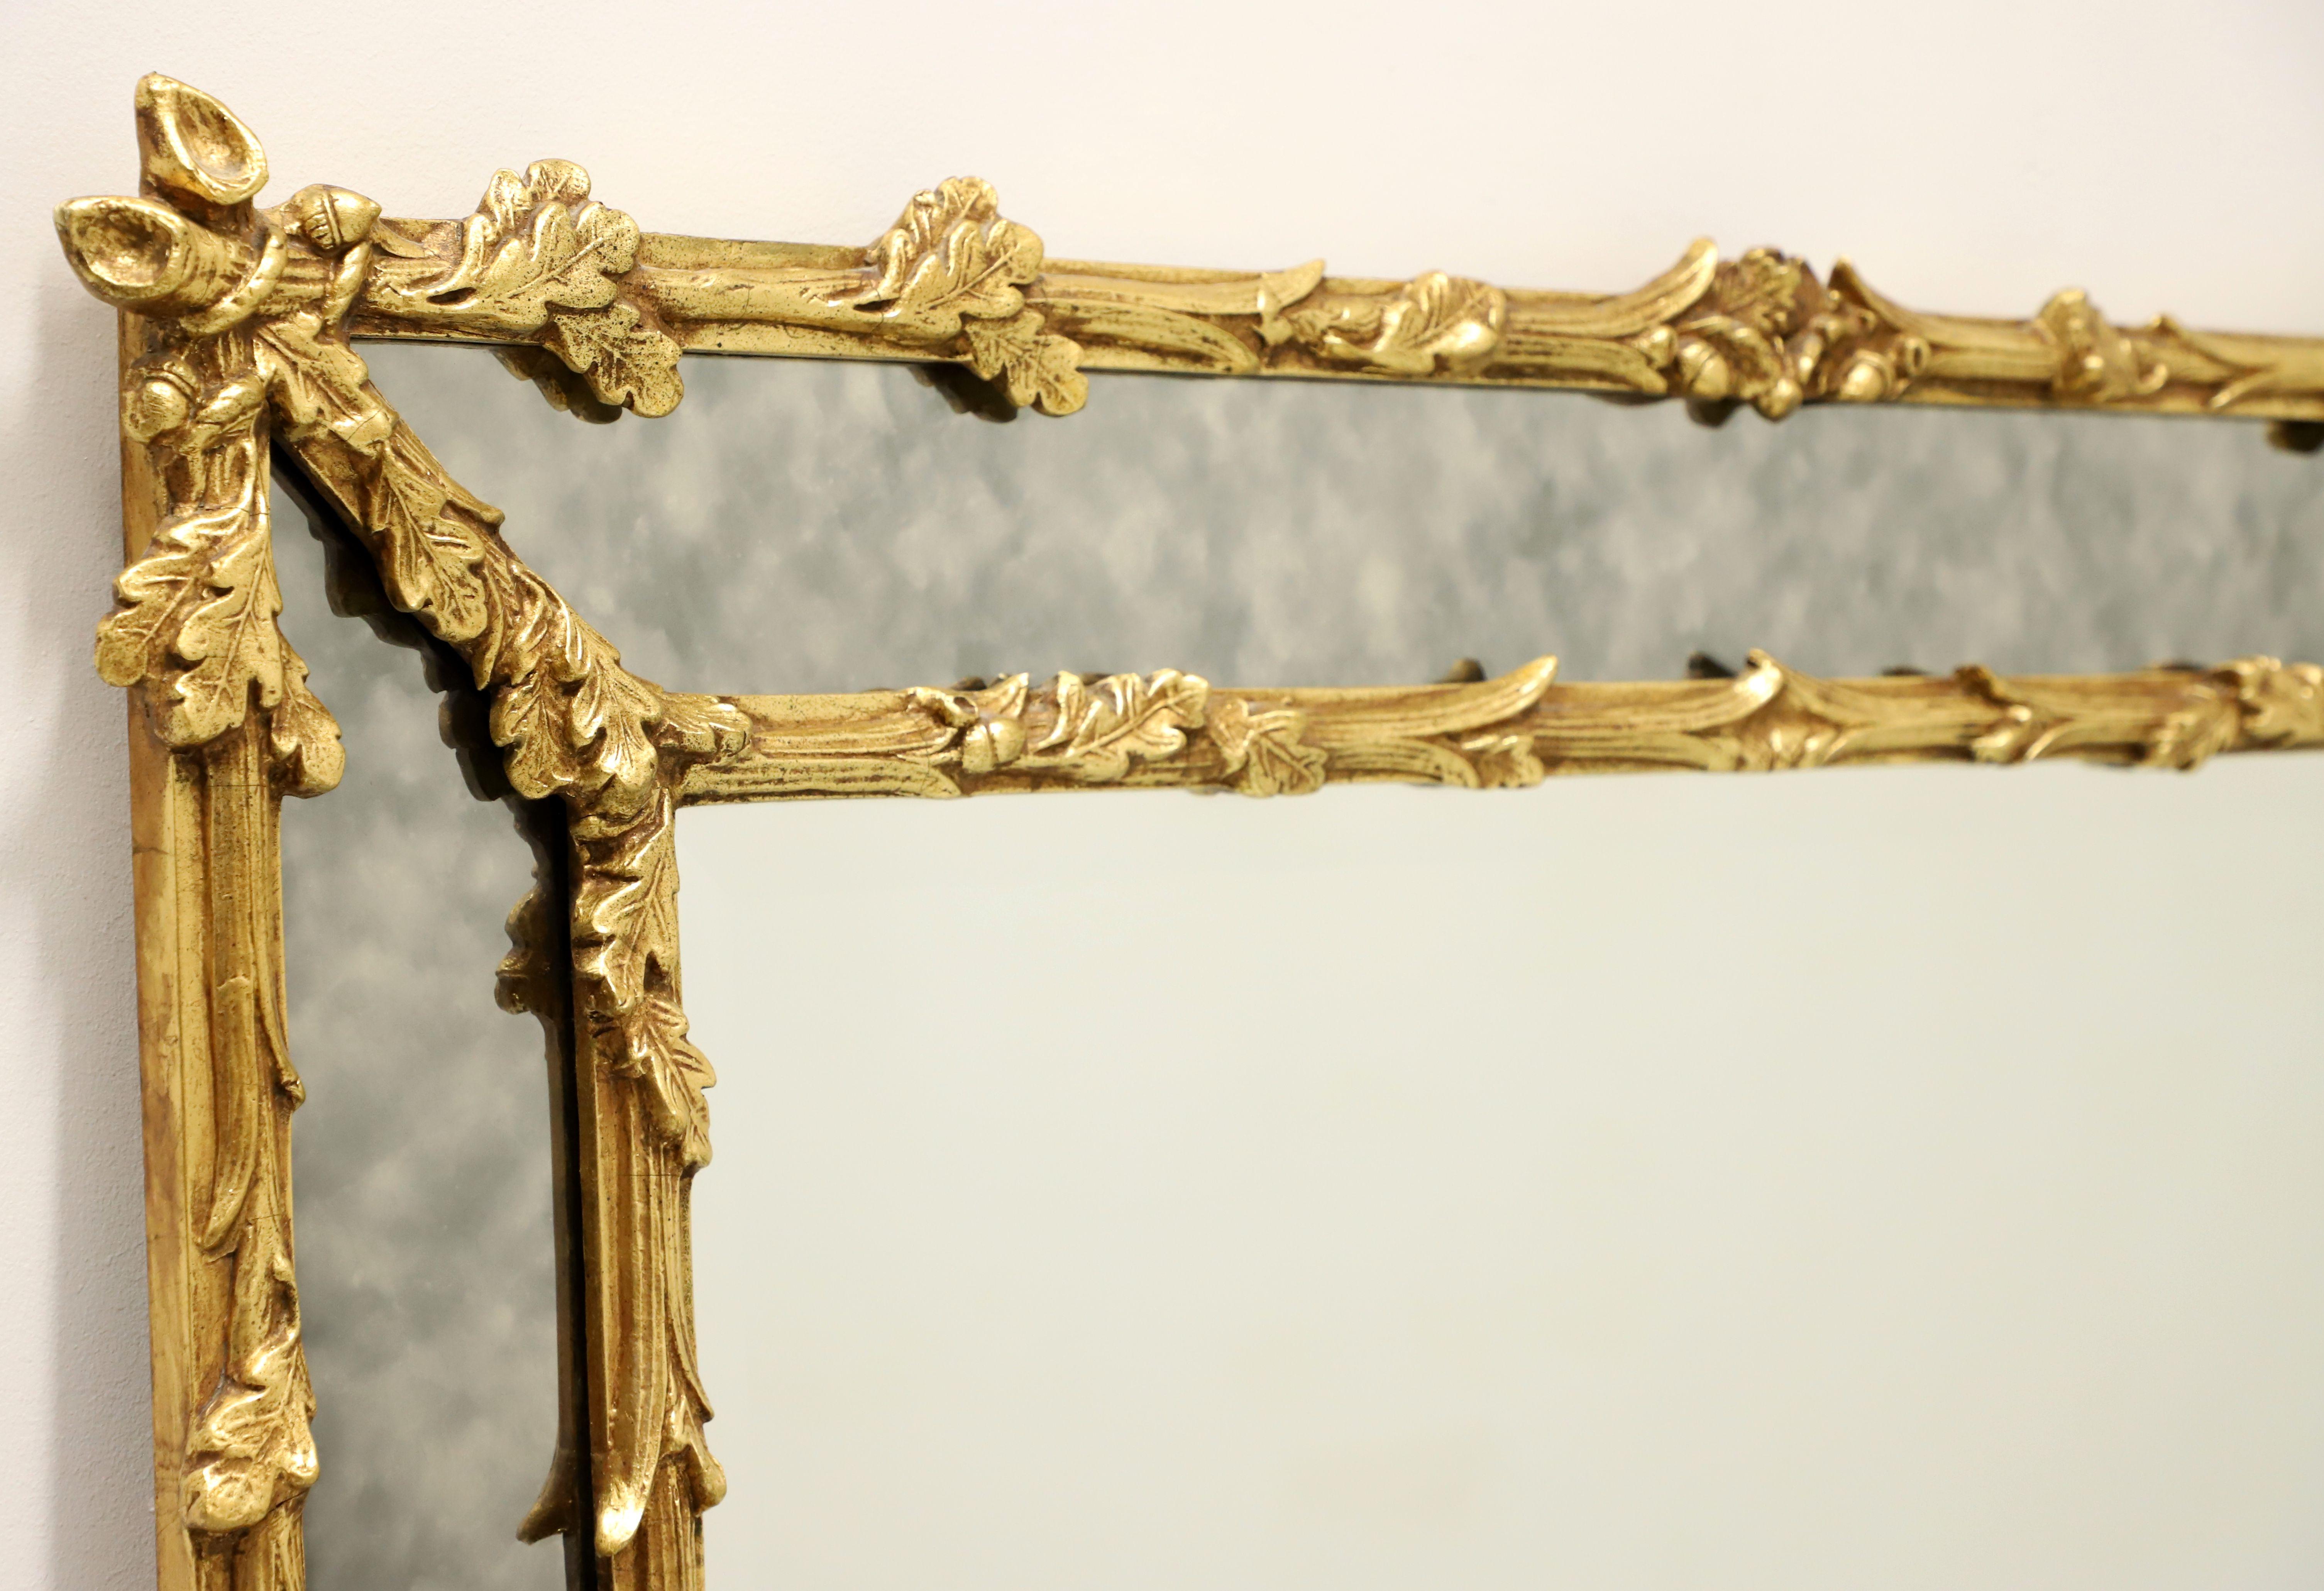 Ein parclose Wandspiegel im französischen Stil von Friedman Brothers. Abgeschrägtes Spiegelglas in einem kunstvoll geschnitzten, goldfarben lackierten Holzrahmen mit großen Streifen aus rauchfarbenen Spiegeln an den Außenkanten. Das Design besteht